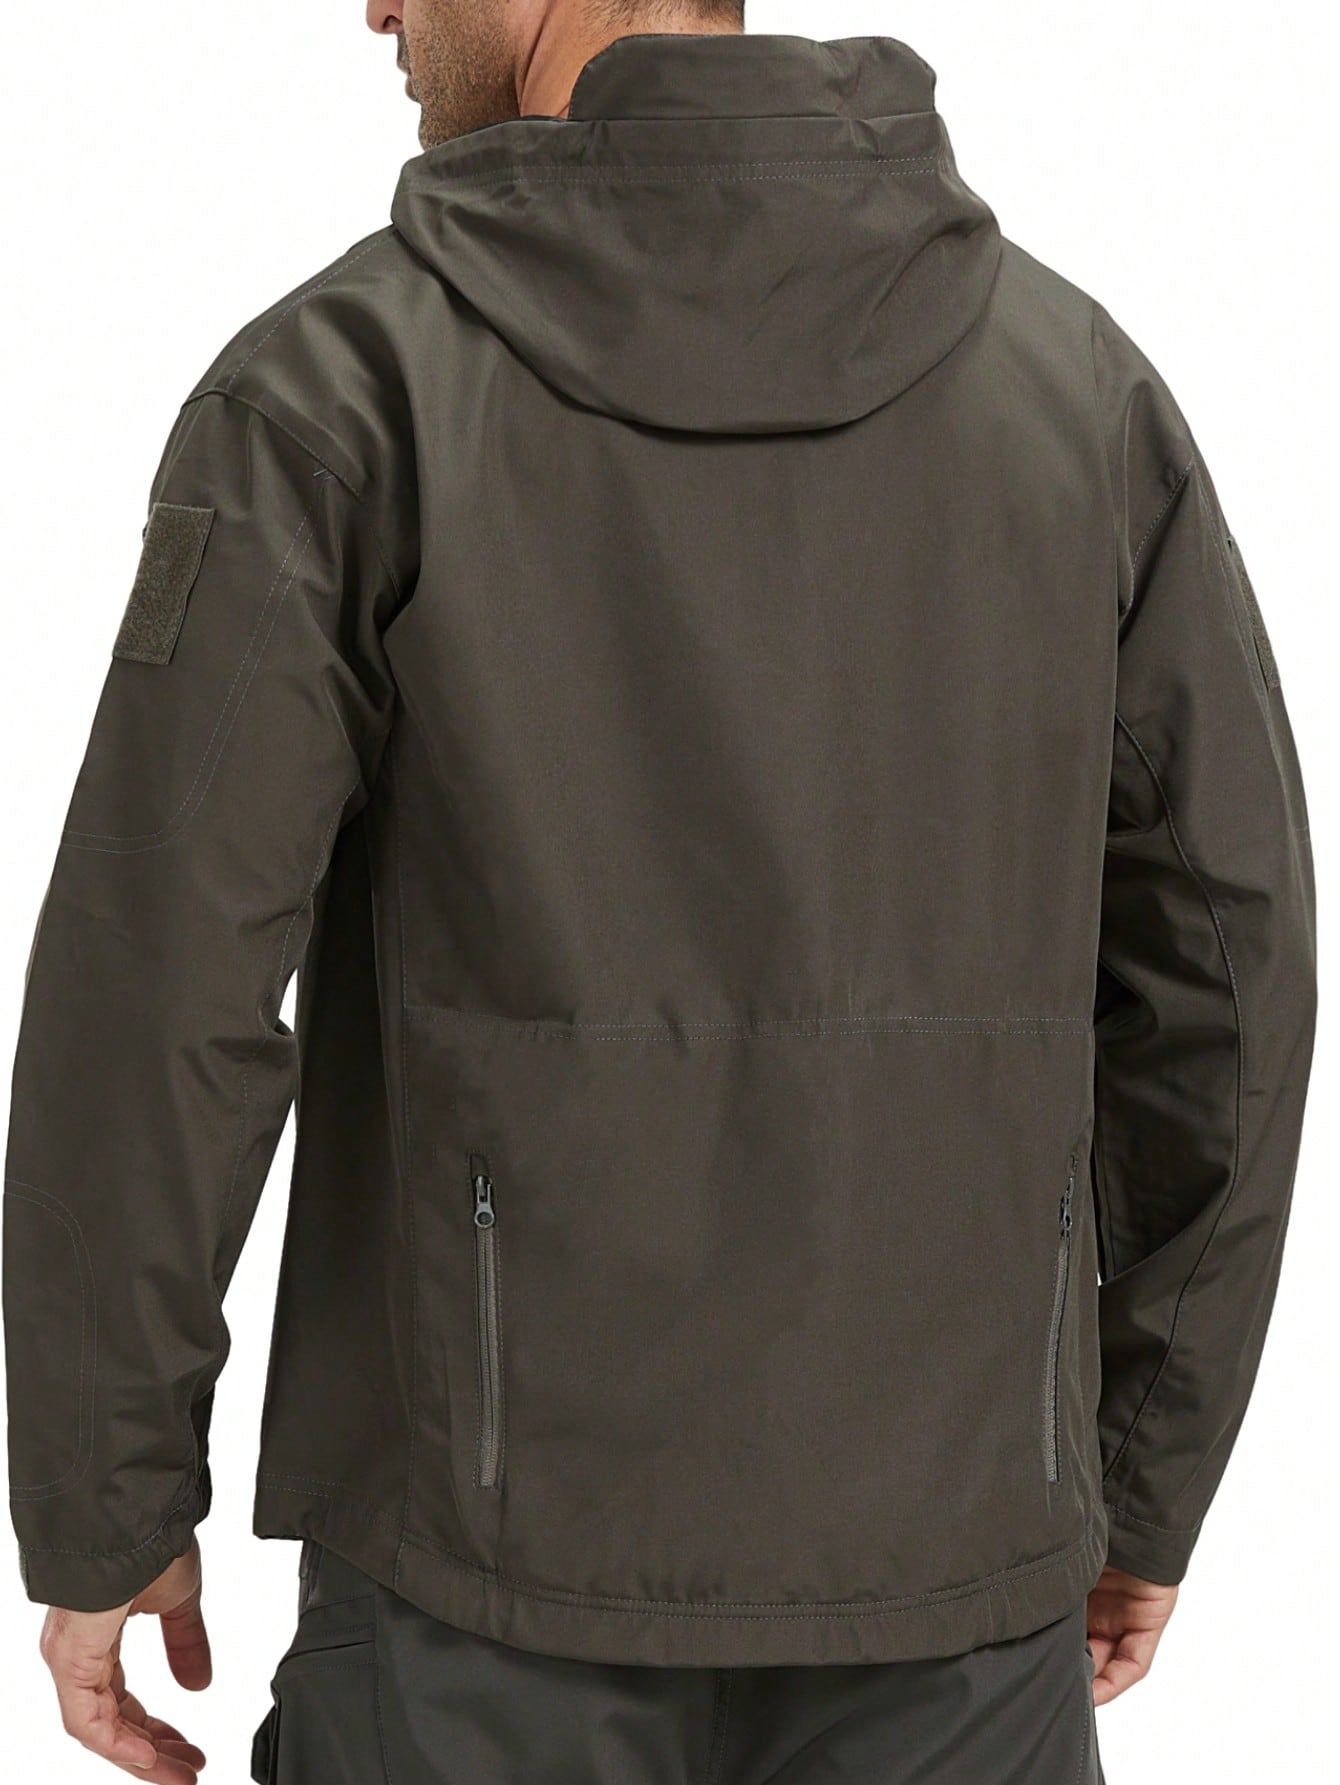 Мужская спортивная куртка с капюшоном, темно-серый мужская ветровка осенняя новая мужская повседневная модная ветрозащитная куртка 2021 тактическая мужская и женская уличная куртка